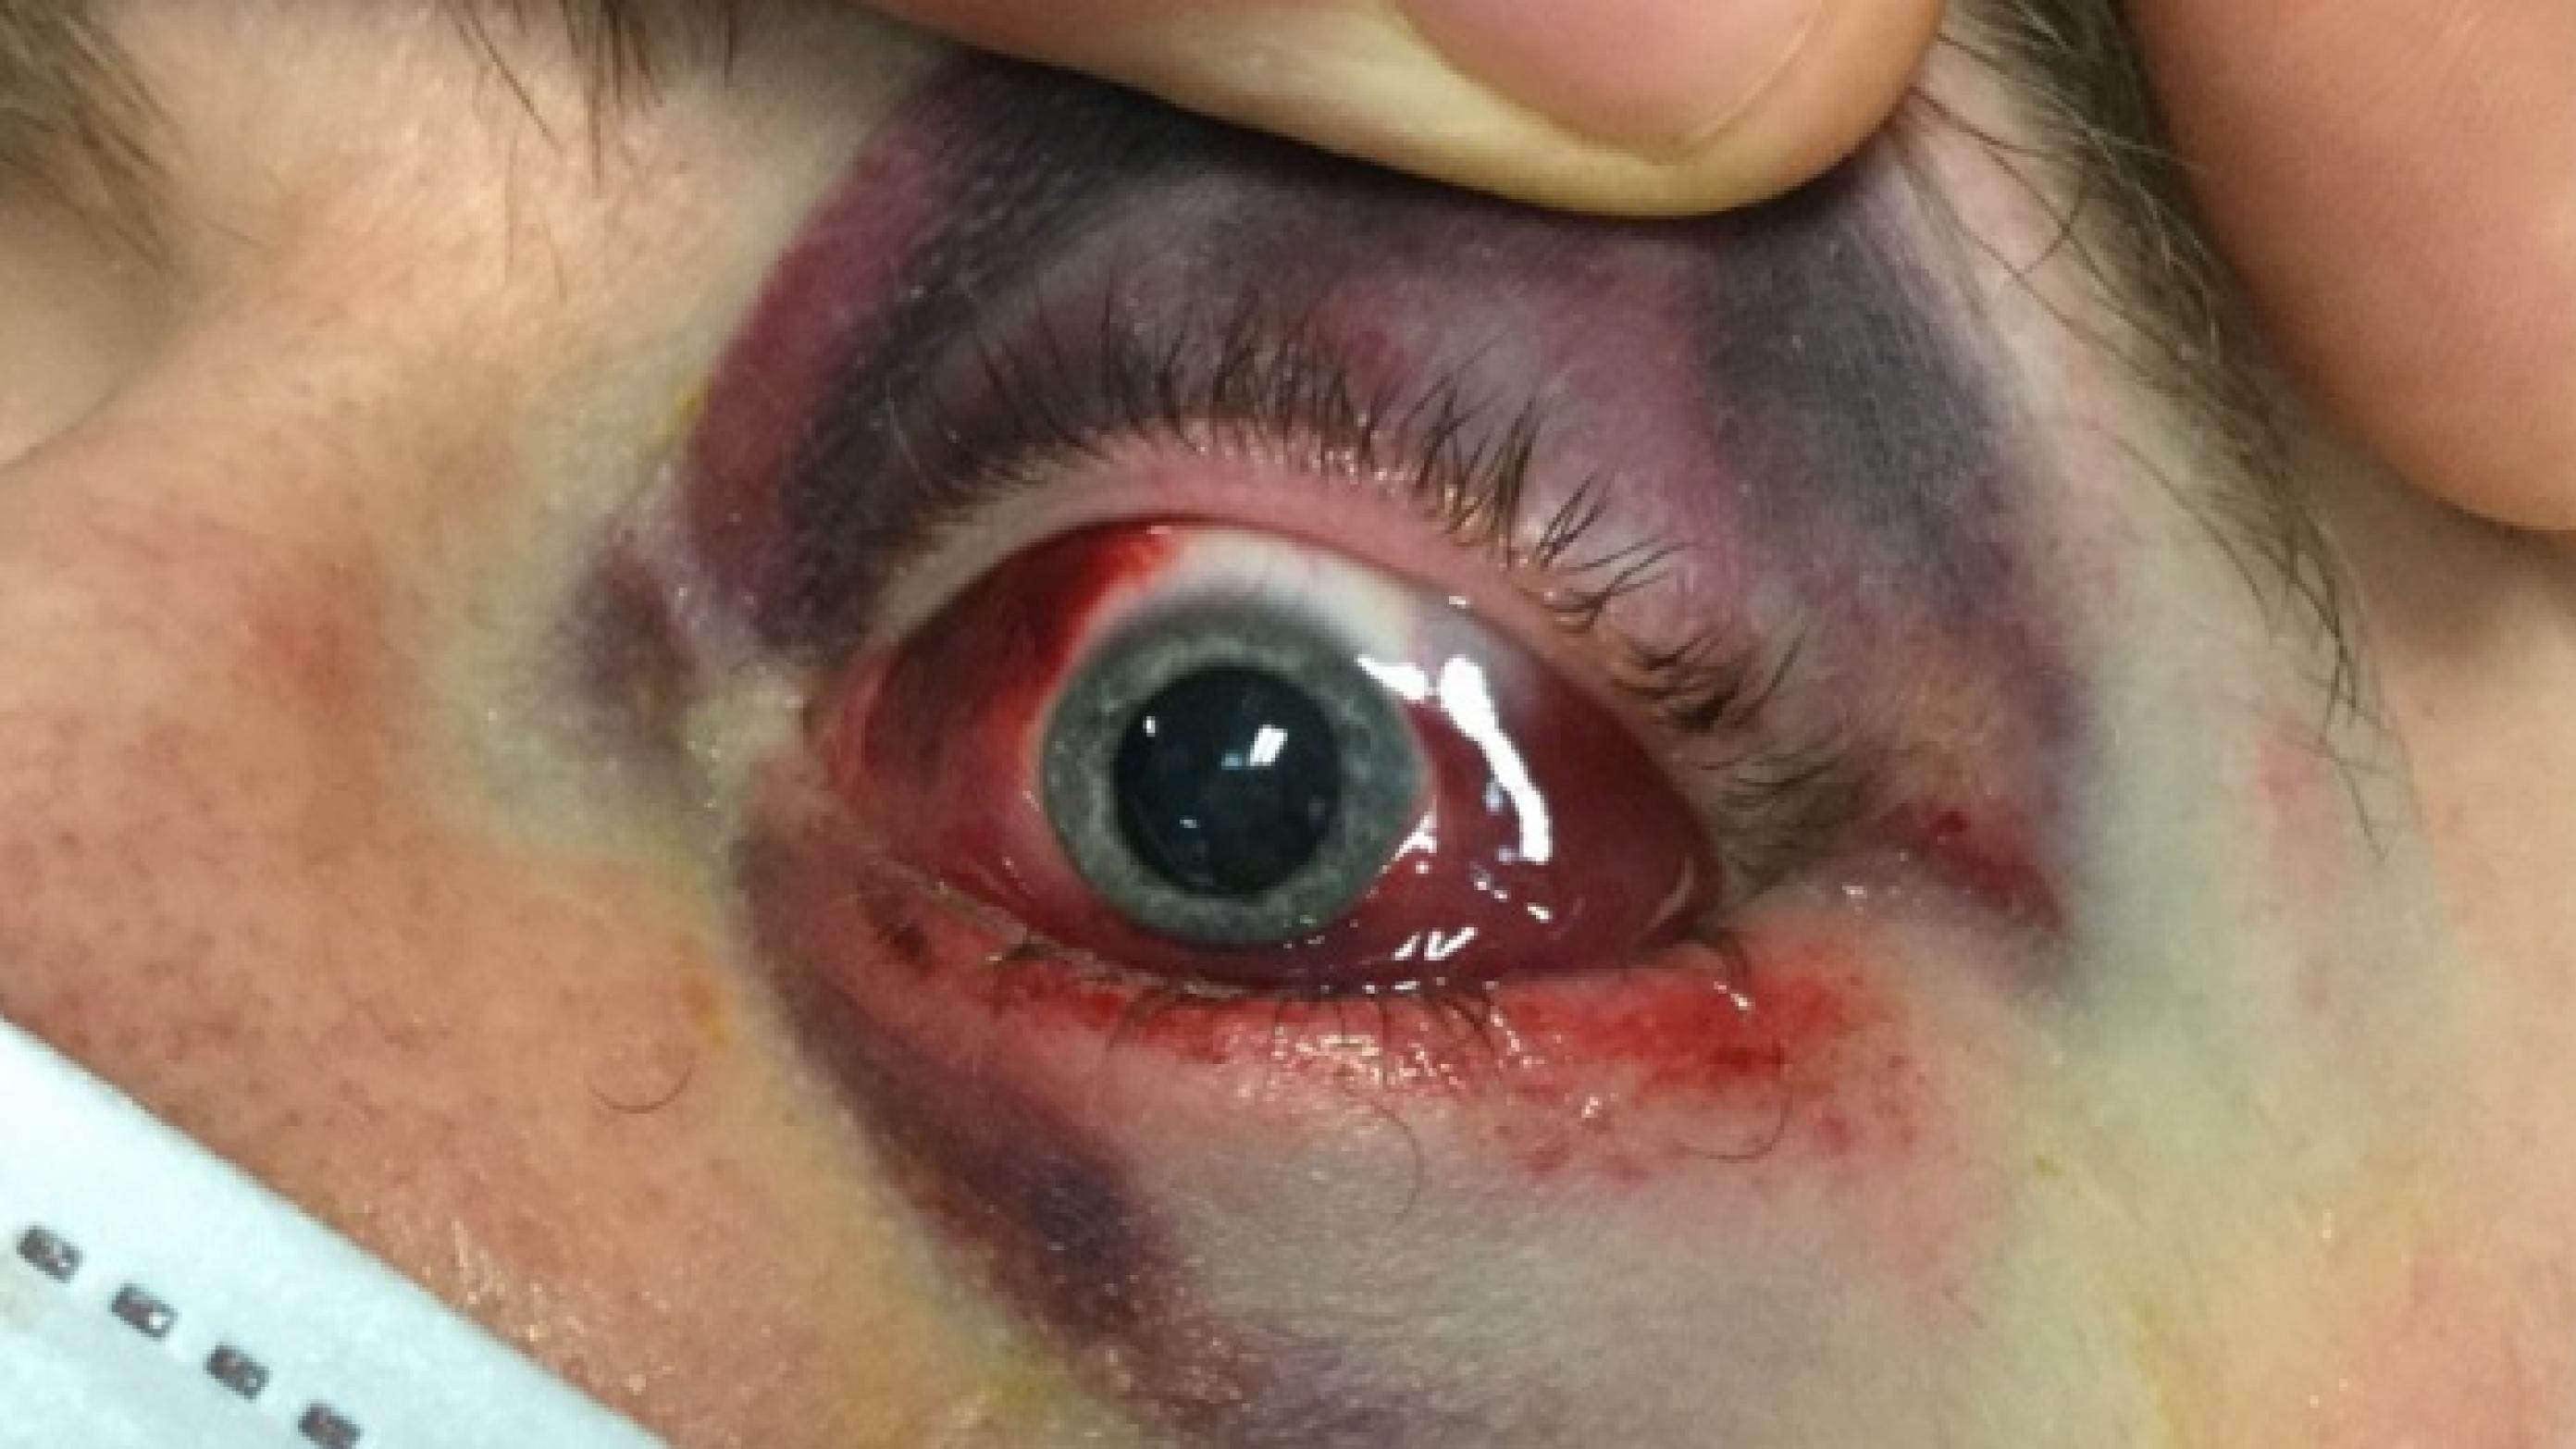 Venstre øje med periokulært ødem og misfarvning, subkonjunktivalt hæmatom, pupildilatation (efter indgift af tropicamidøjendråber) og exophthalmus. 